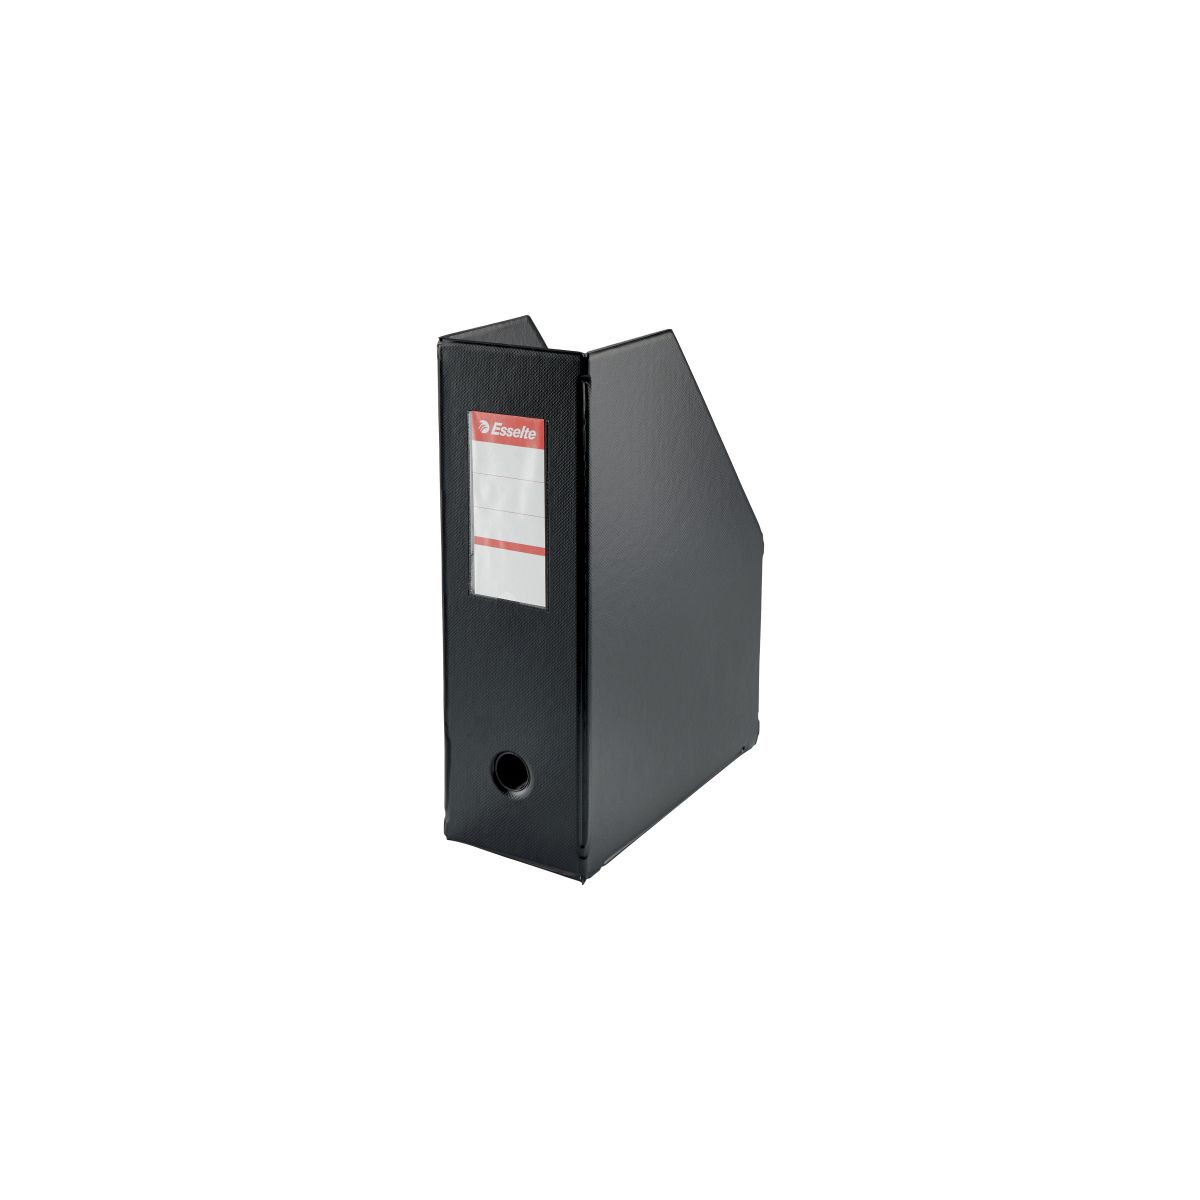 Pojemnik na dokumenty pionowy A4 czarny PVC PCW Esselte (56077)